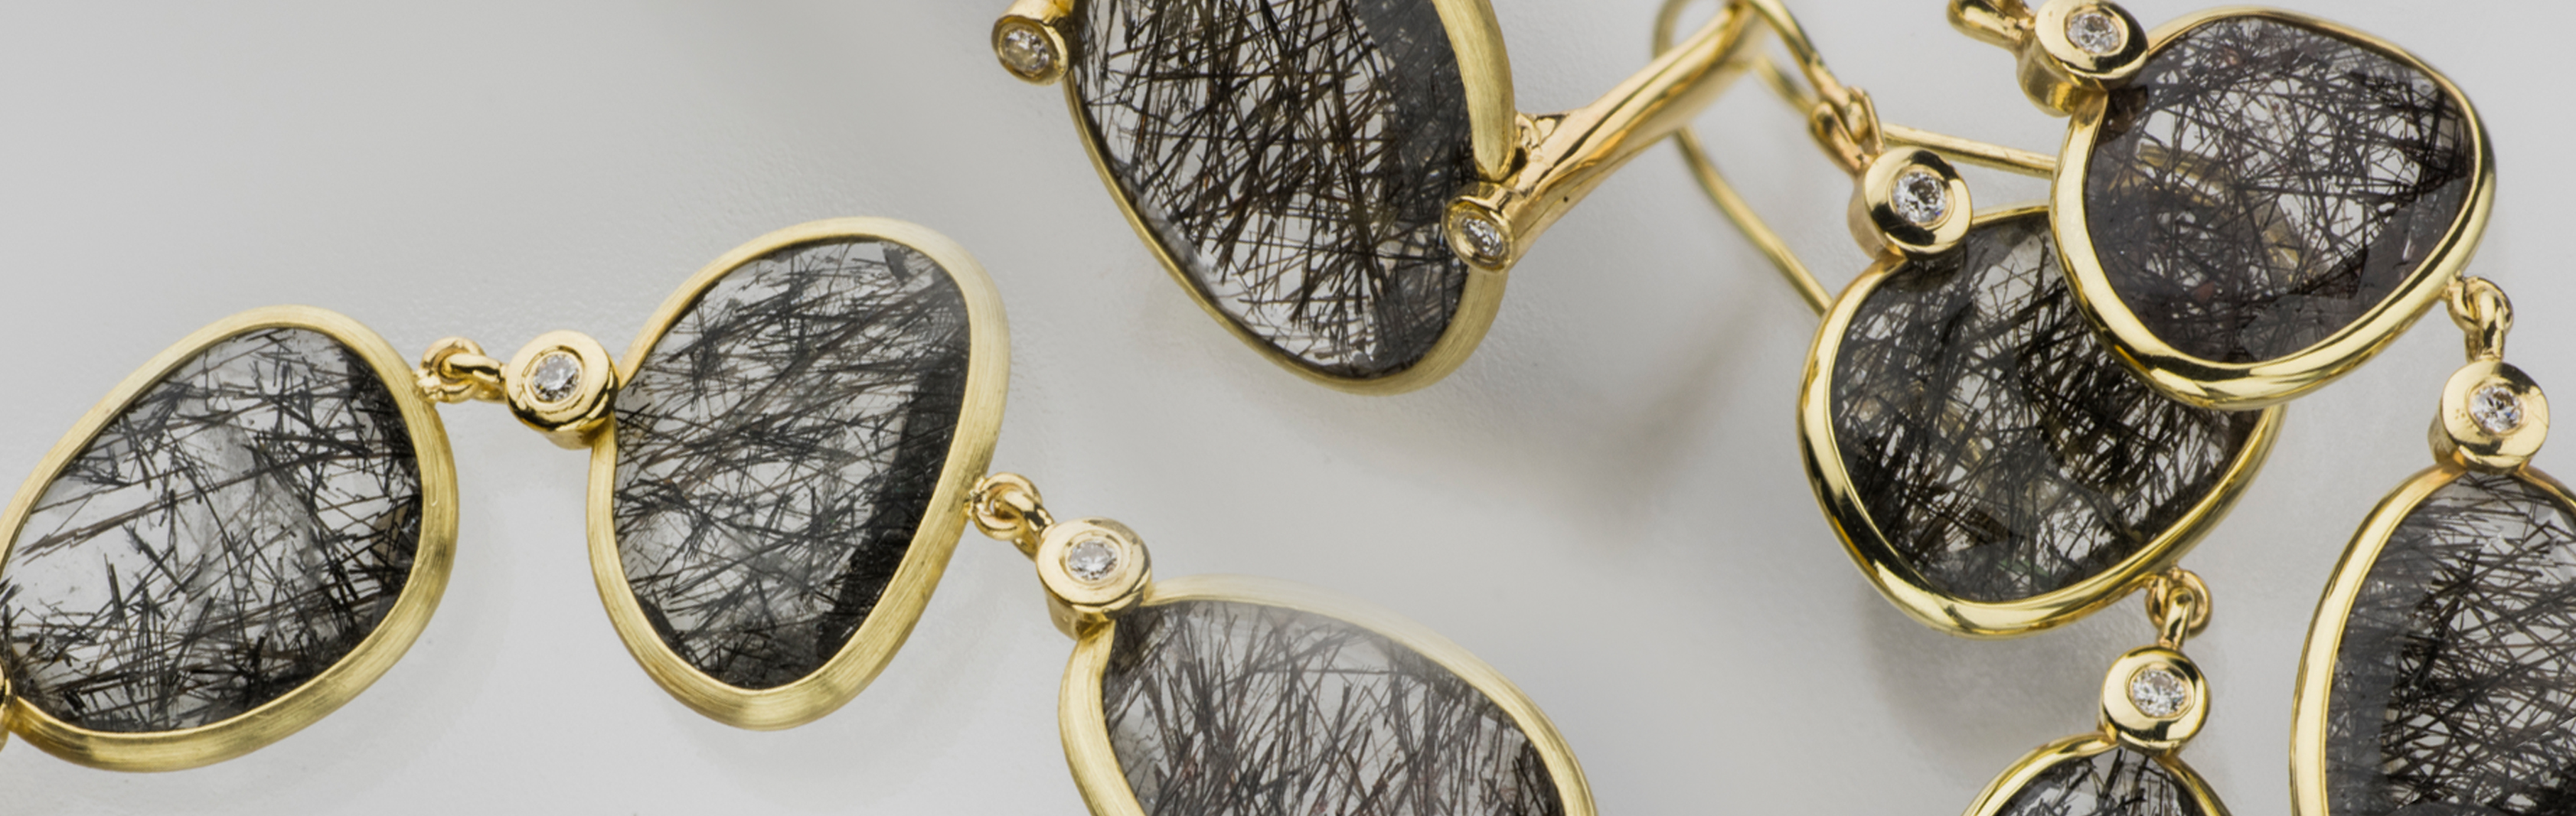 קולקציית סתיו שחור - תכשיטי זהב 14 קראט אבני רוטיל קוורץ ויהלום